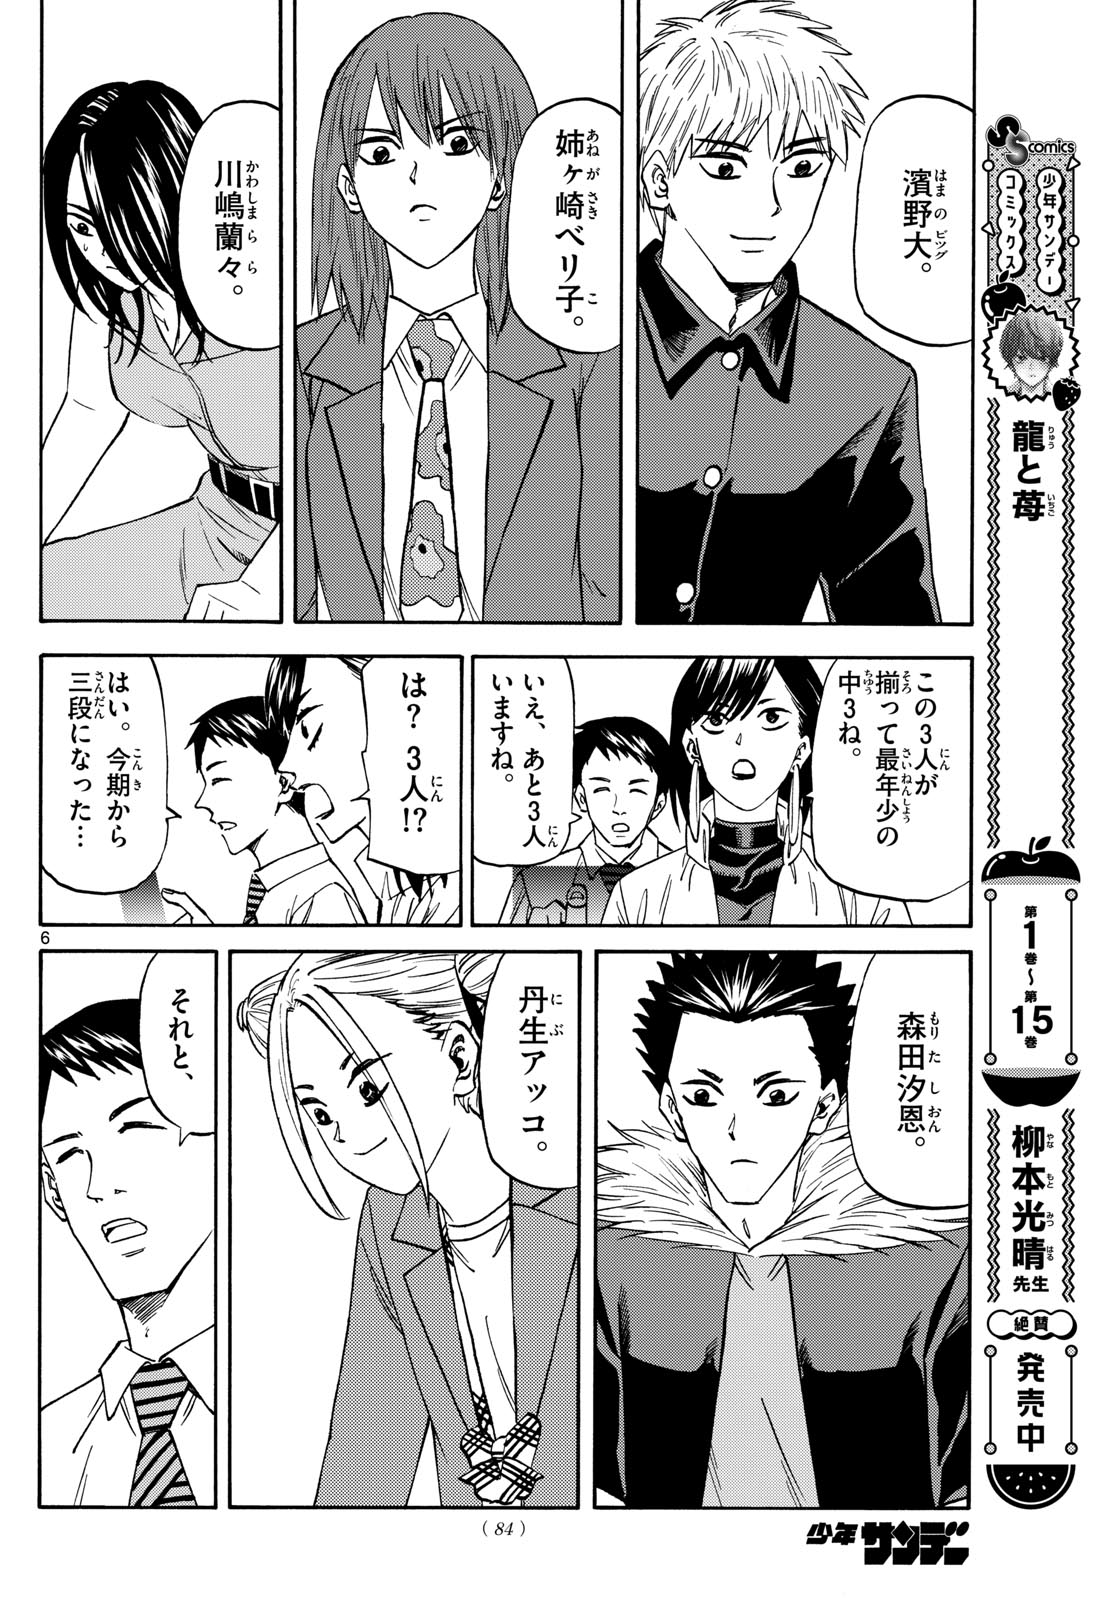 Tatsu to Ichigo - Chapter 185 - Page 6